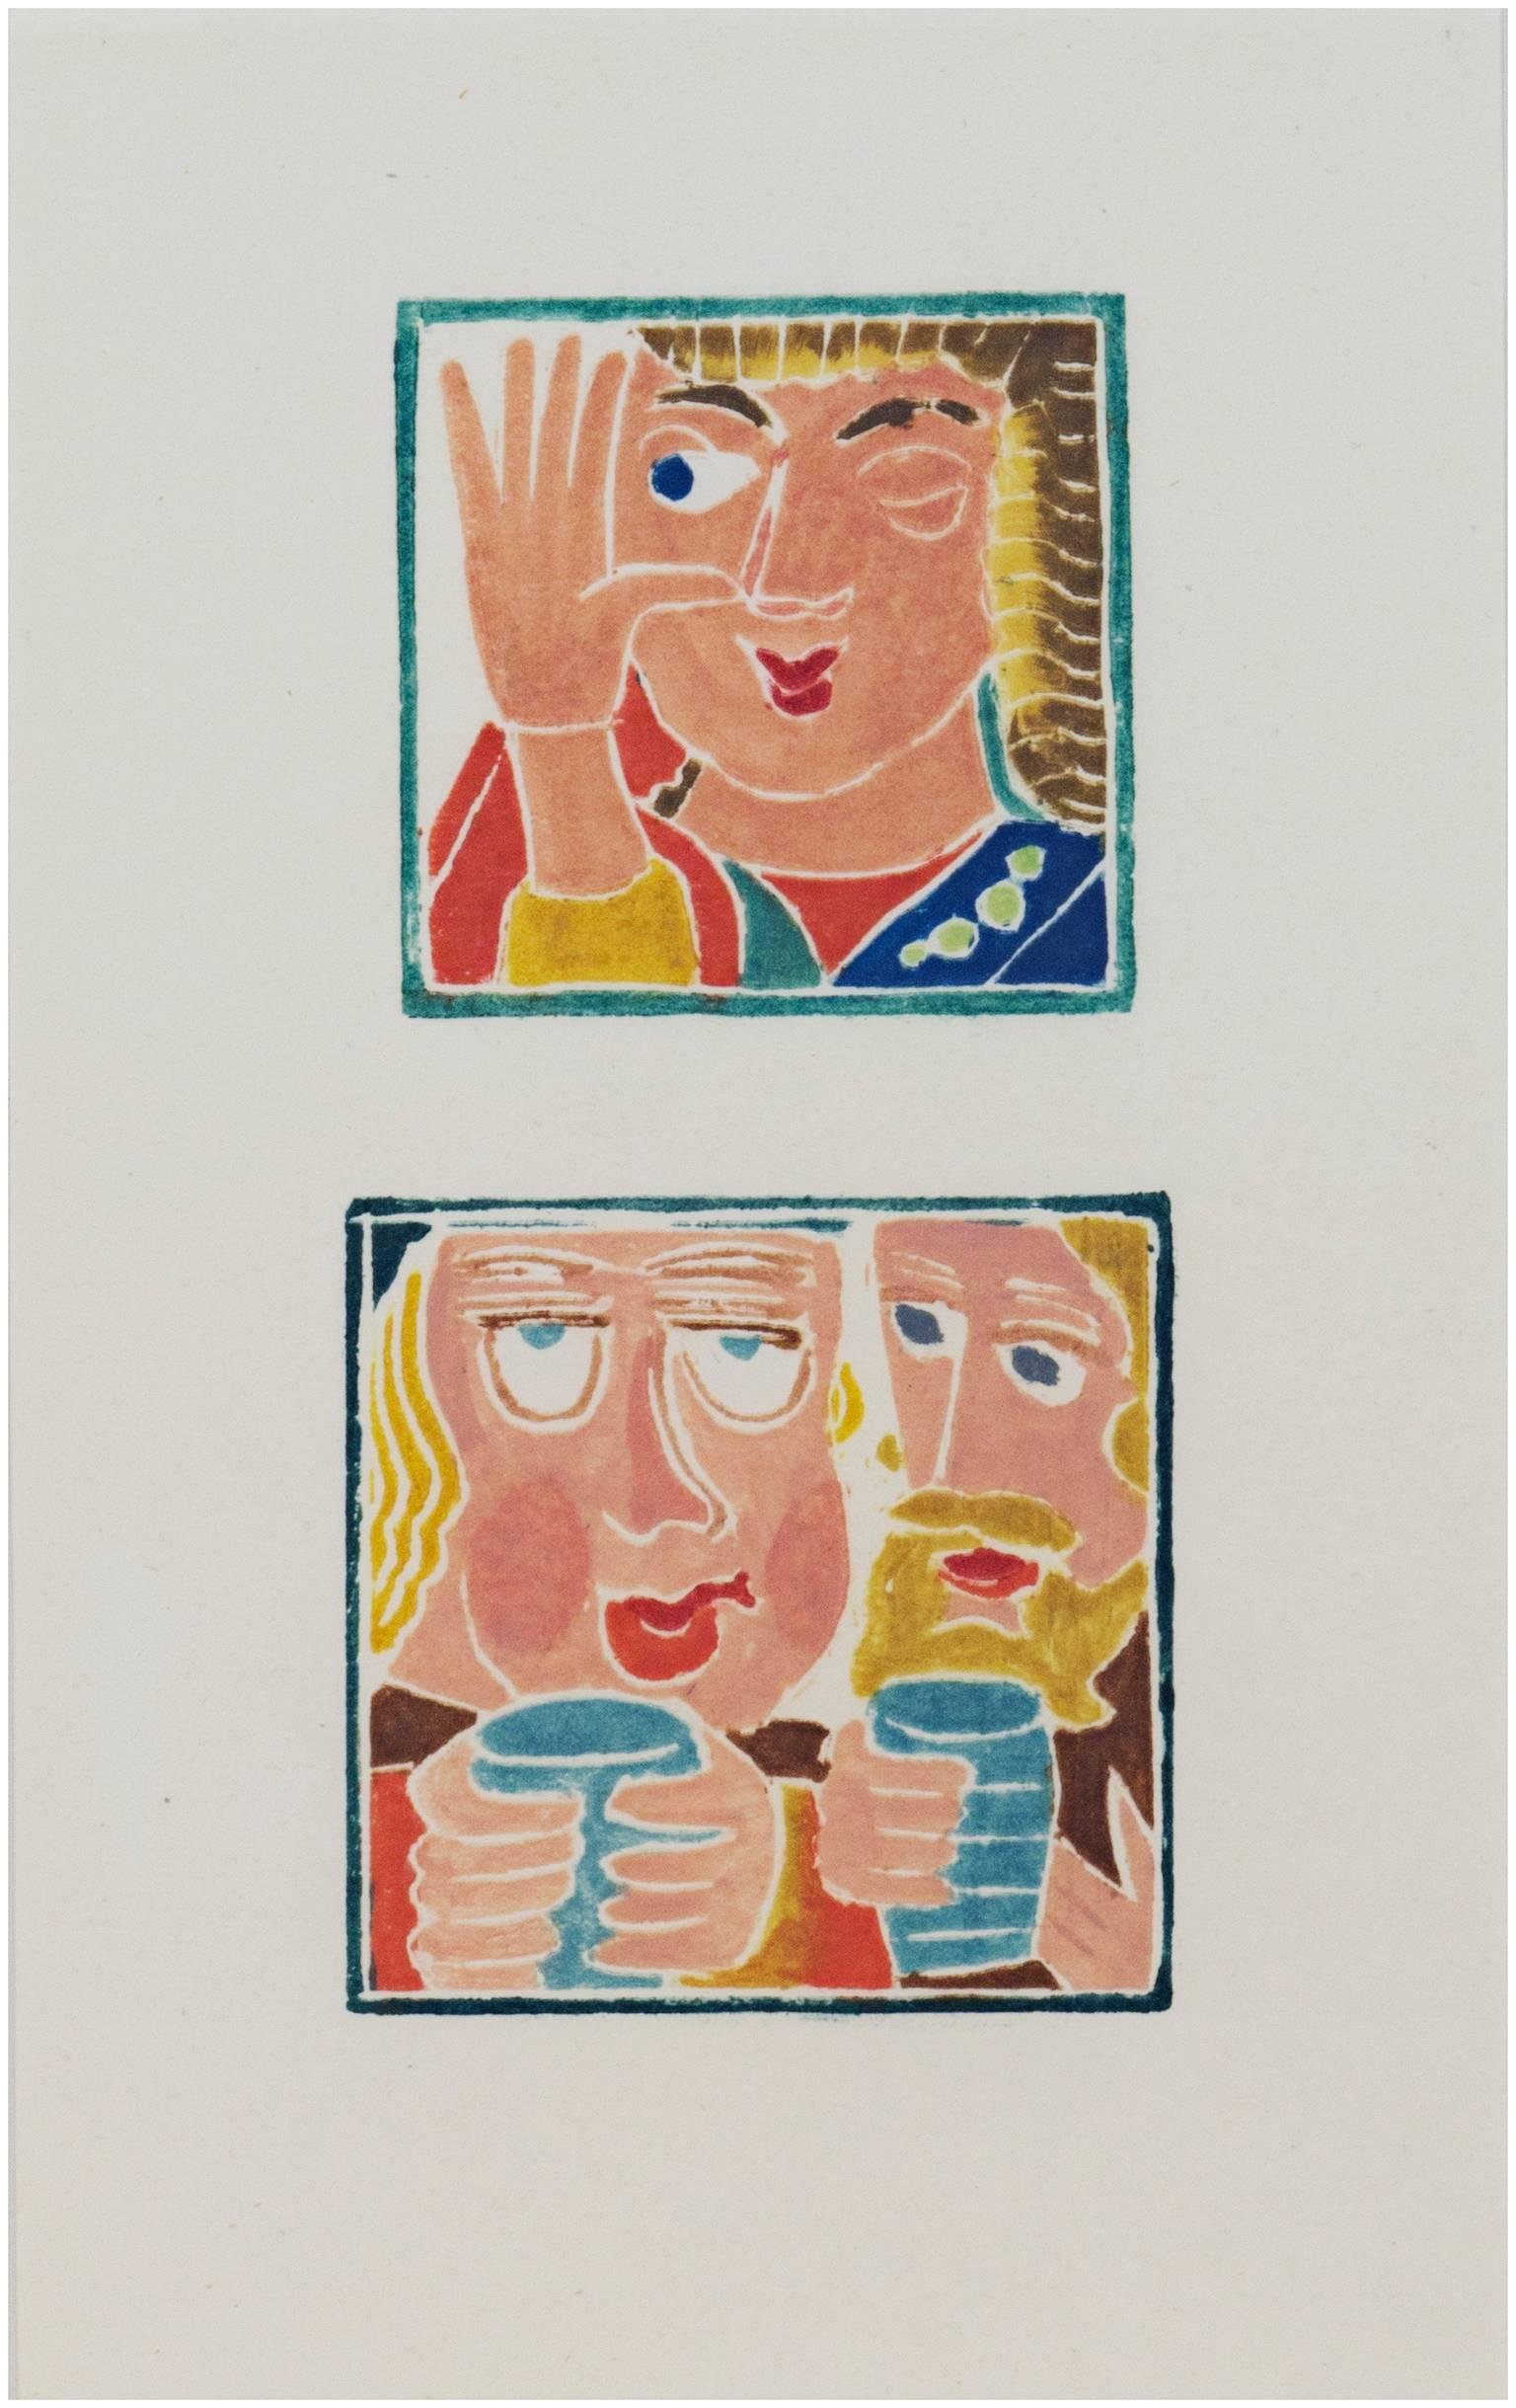 "The Wink and Too Much Ale" est un ensemble de deux gravures sur bois originales en couleur d'André Derain. Il provient d'une édition de 200 exemplaires et a été créé en 1943. Ces gravures sur bois représentent un homme qui fait un clin d'œil et